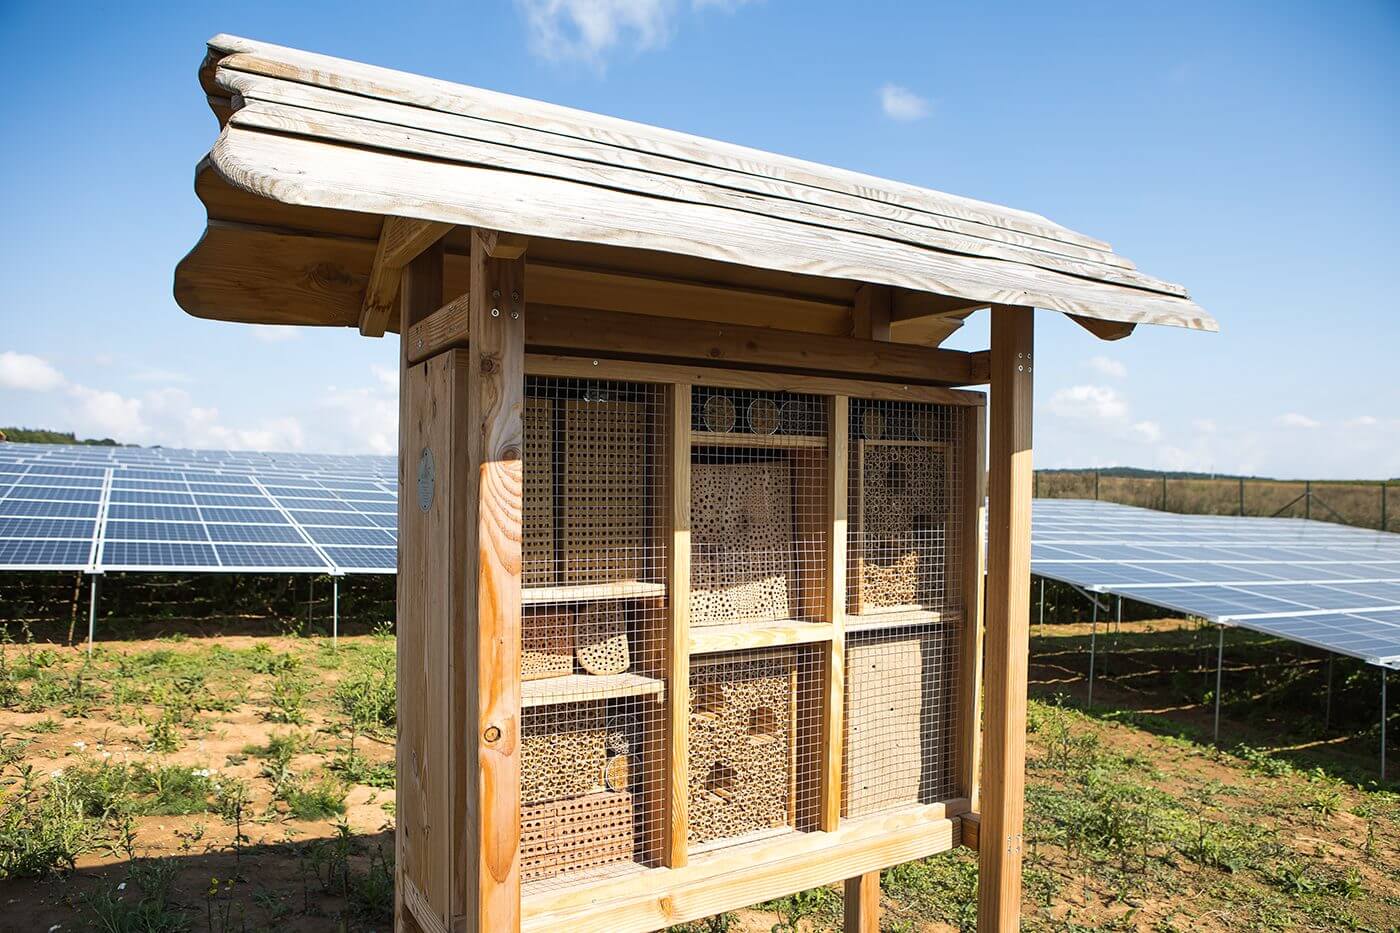 Zu sehen ist ein Insektenhotel auf einer 2021 in Betrieb genommenen Solaranlage in Rottendorf, Bayern. Eine von vielen Ausgleichsmaßnahmen bei BELECTRIC, um die Artenvielfalt zu fördern.